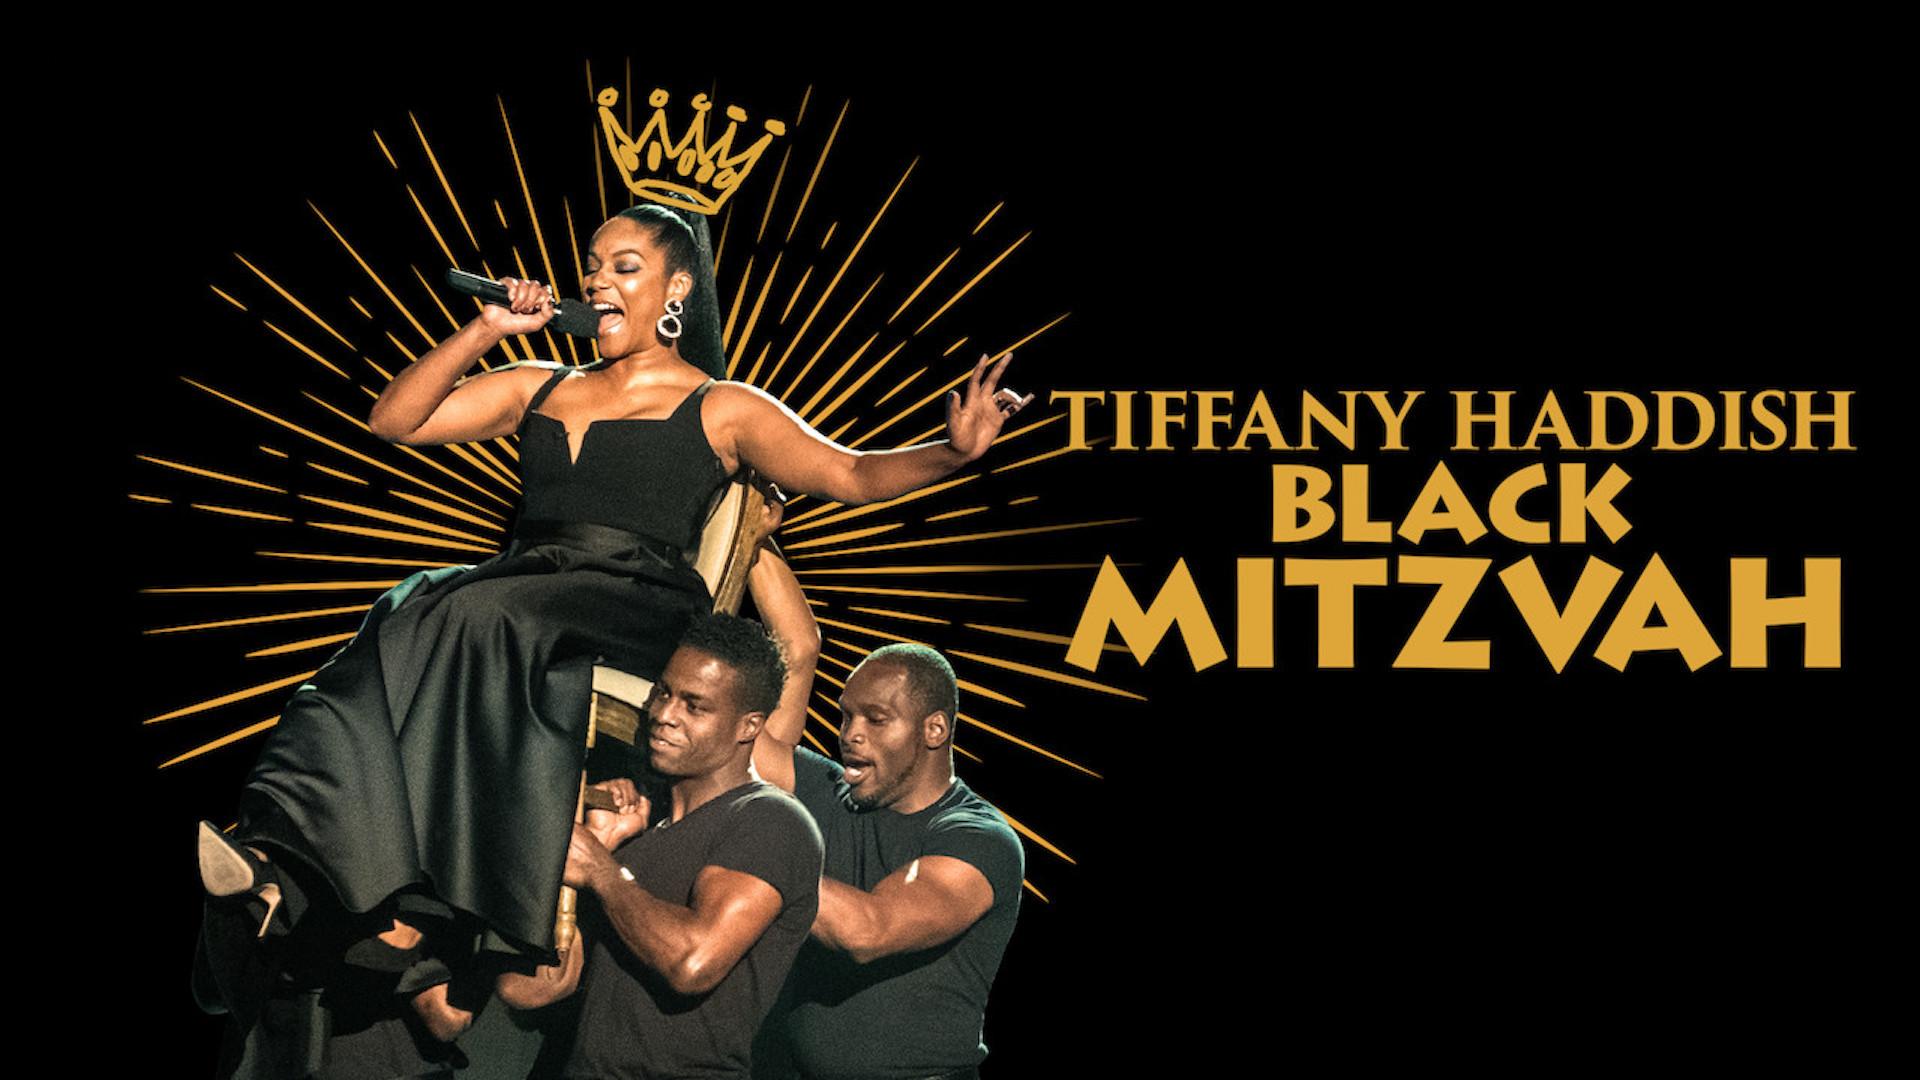 Tiffany Haddish: Black Mitzvah